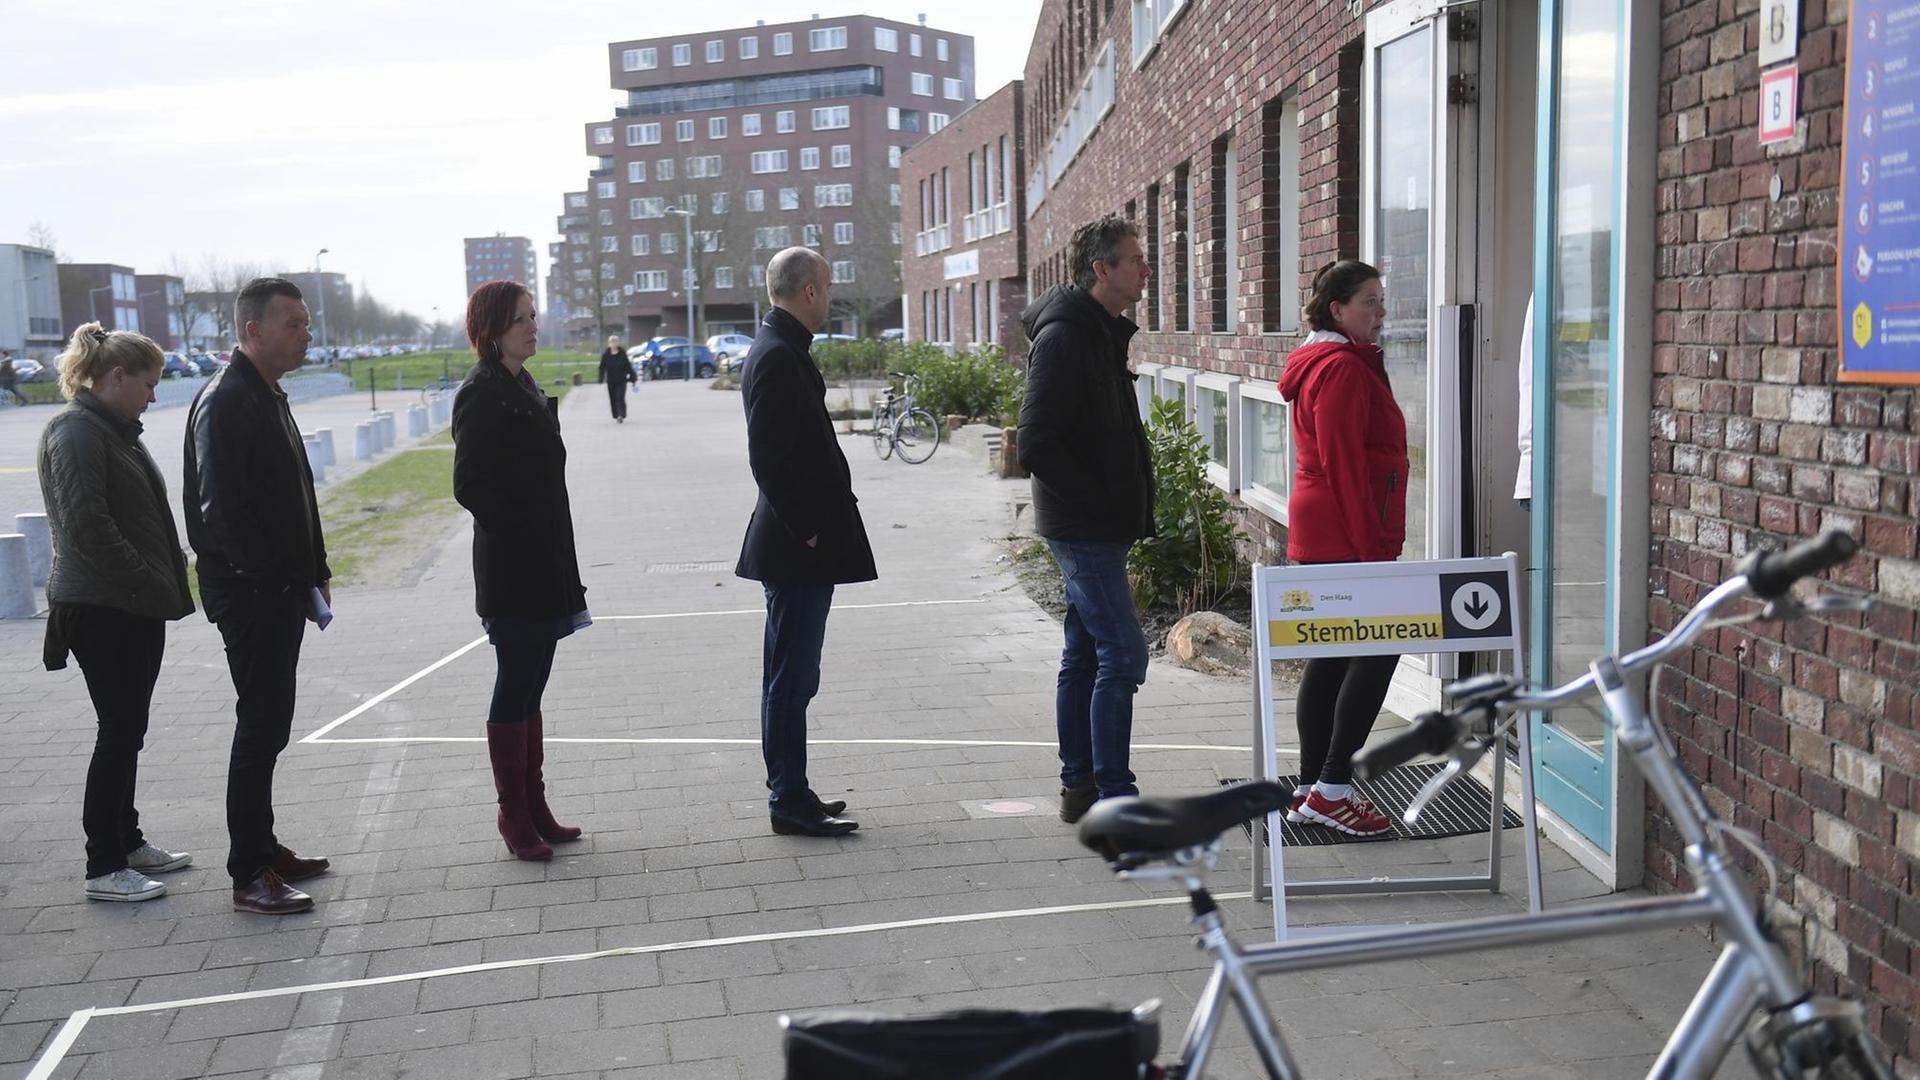 Wähler stehen vor einem Wahllokal in Den Haag Schlange.